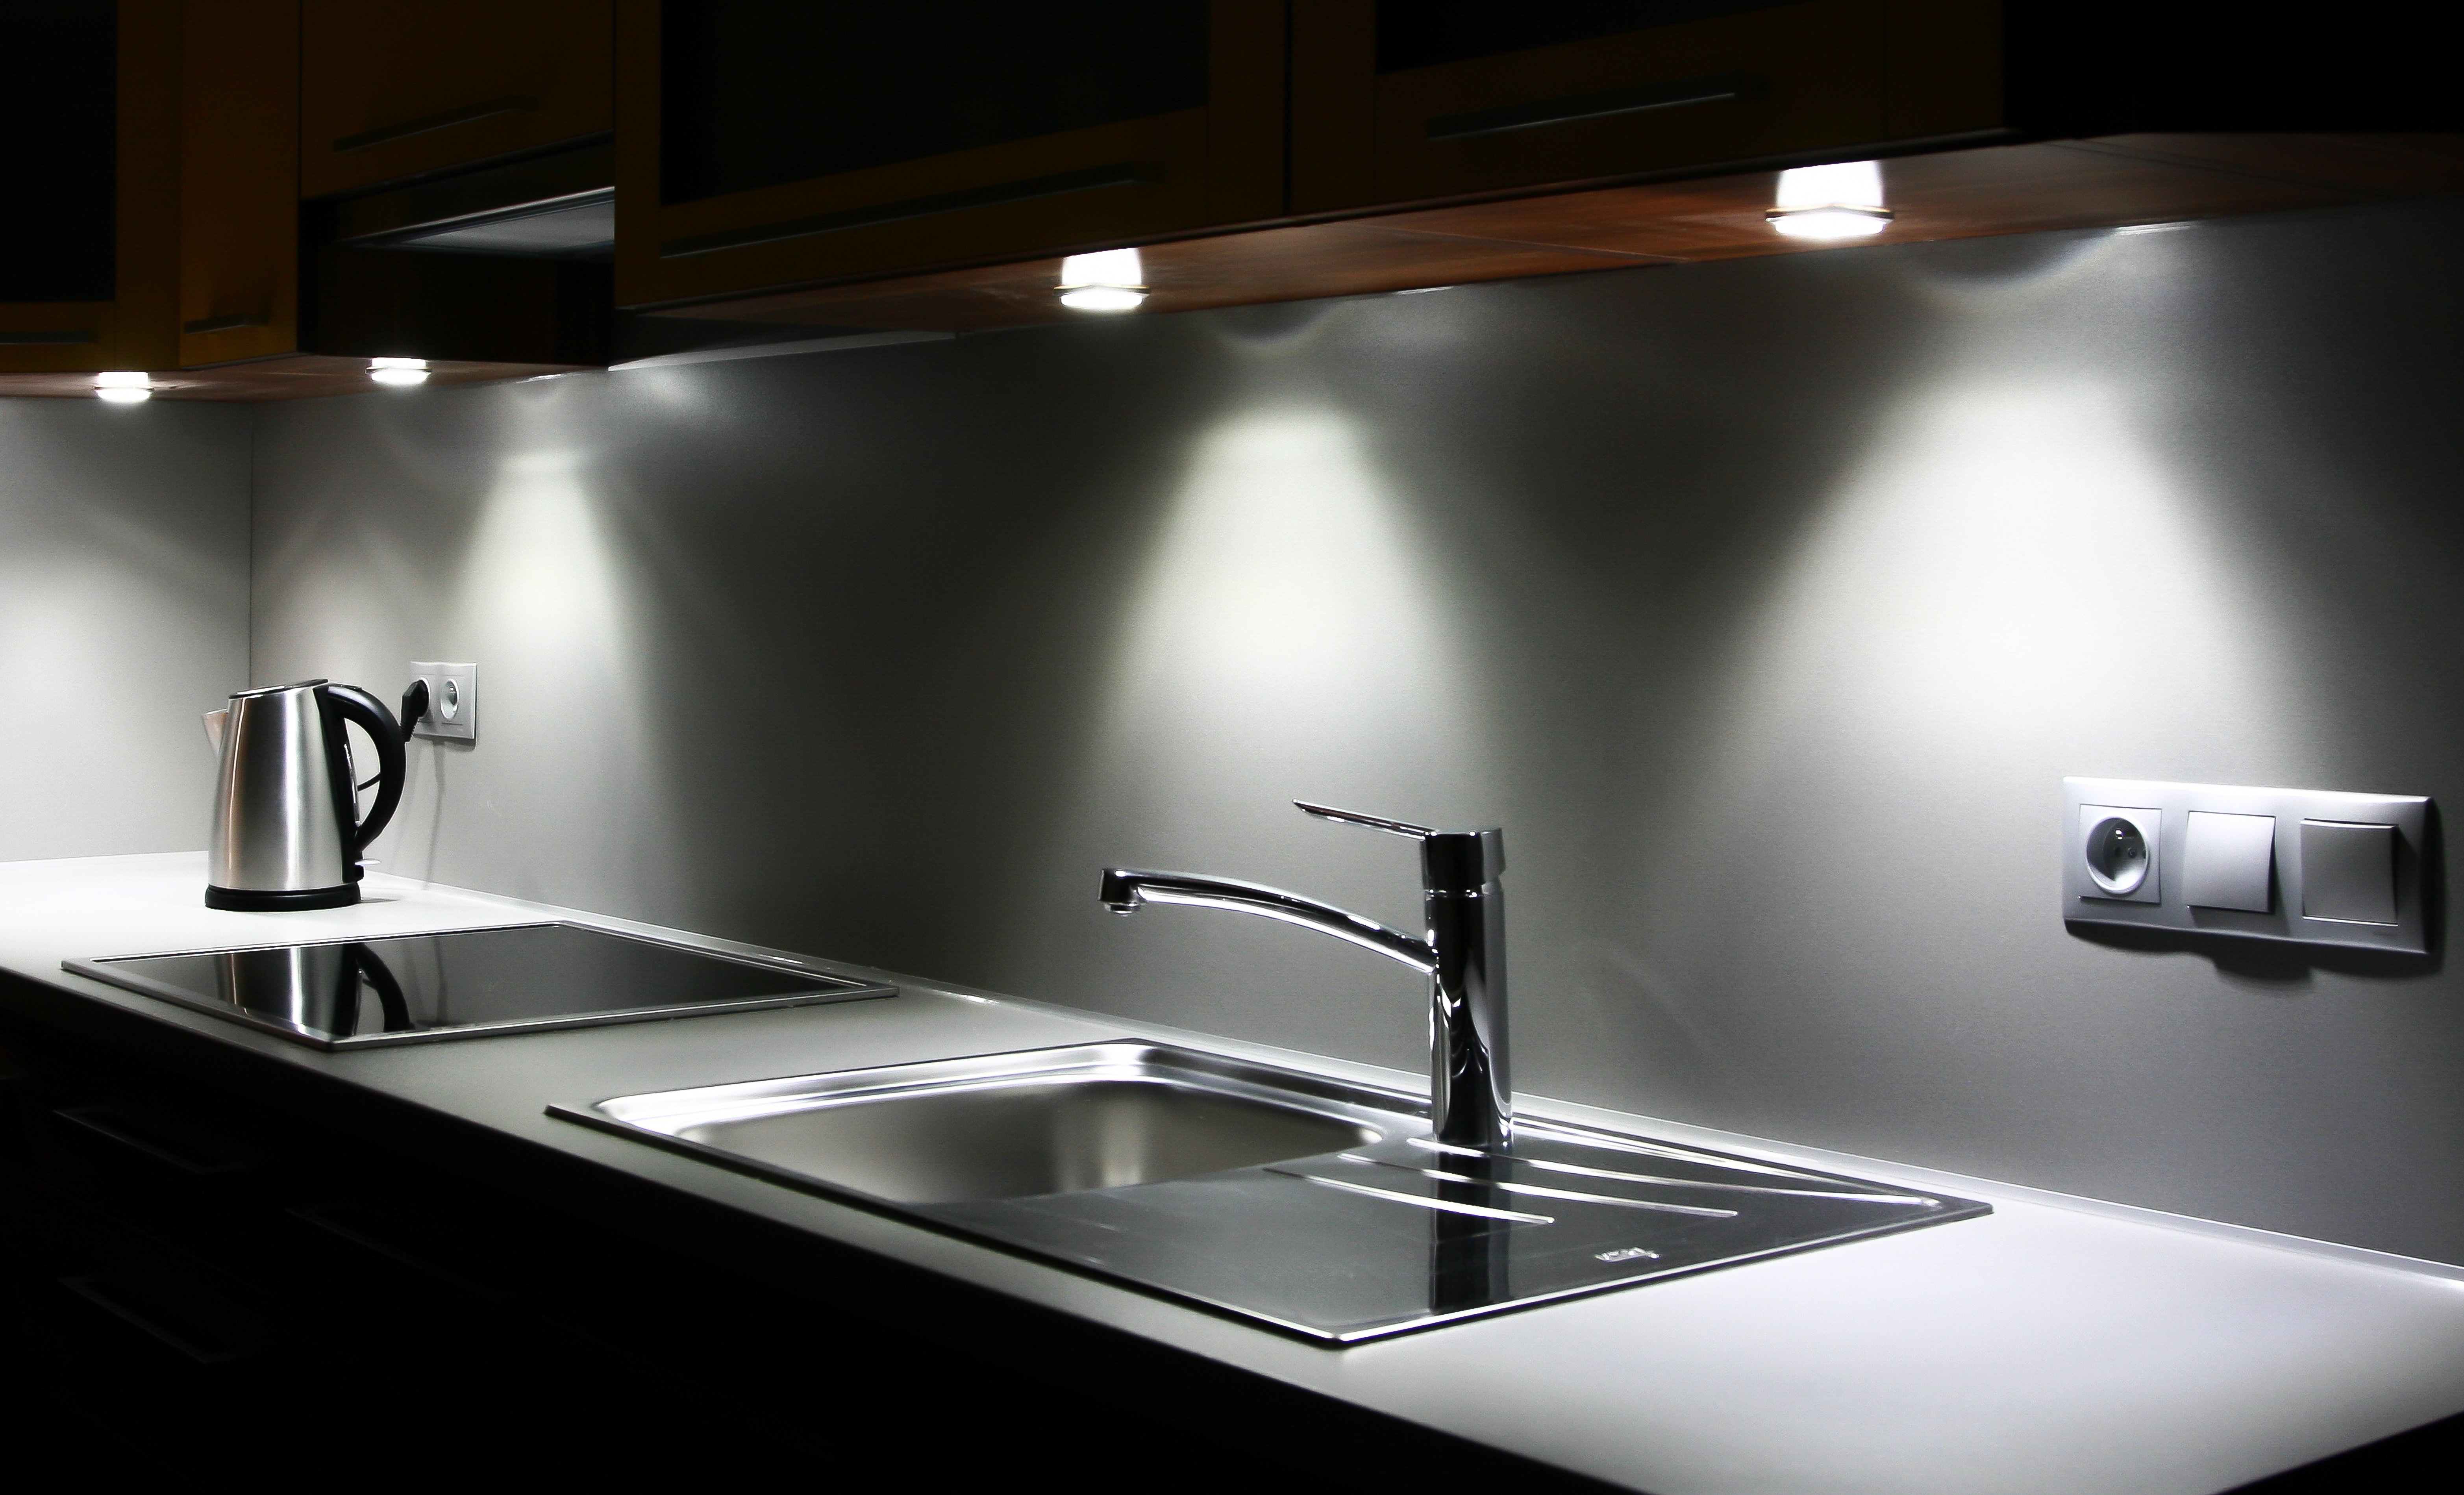 Add lighting. Подсветка для кухни. Светильники для кухни над рабочей поверхностью. Подсветка для кухни под шкафы. Led подсветка для кухни.